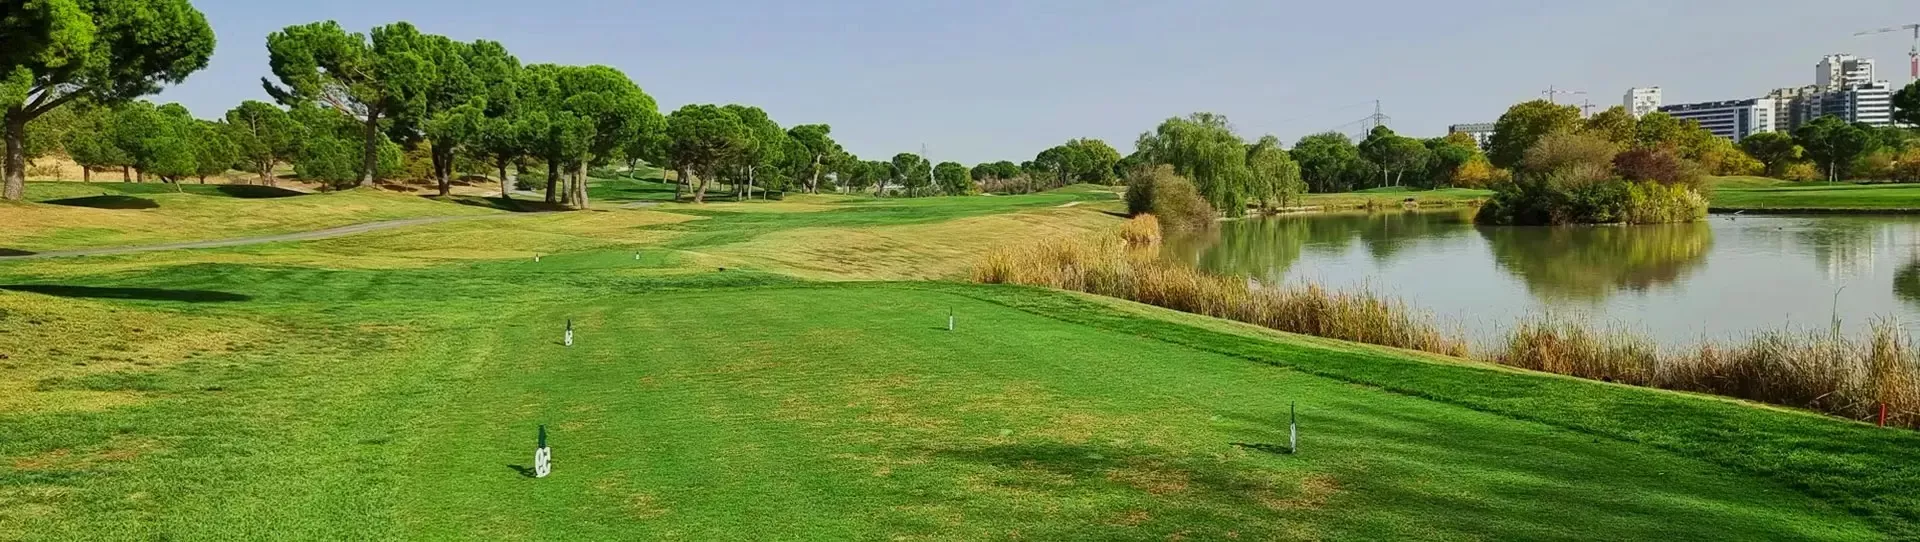 Spain golf courses - La Moraleja Golf Course II - Photo 2